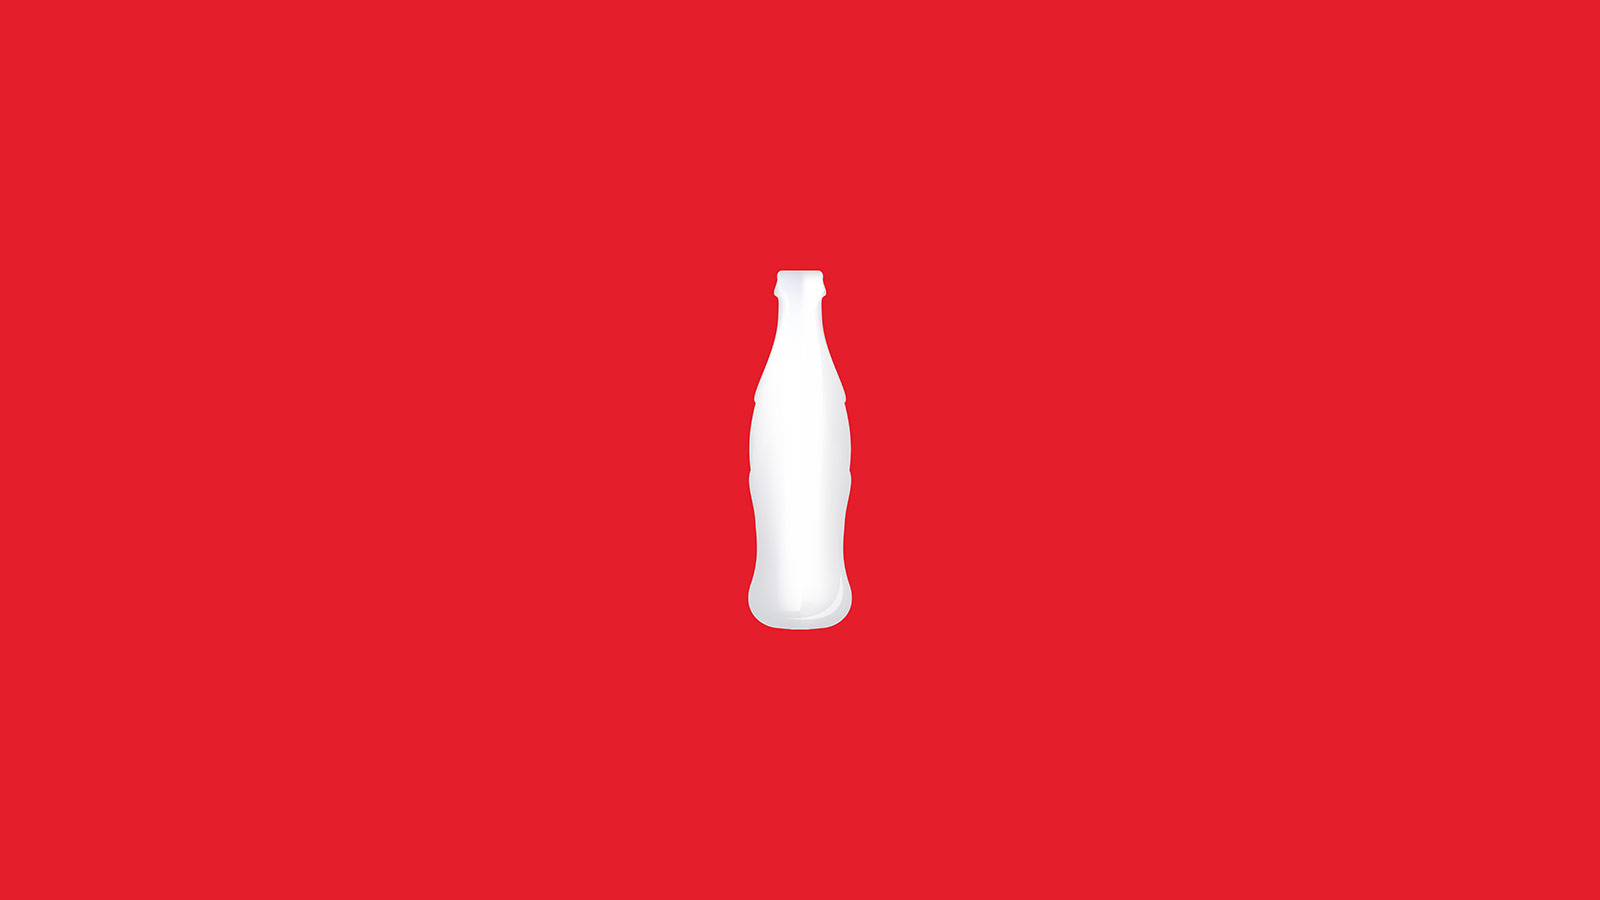 Share A Coke is back, but has it gone flat?